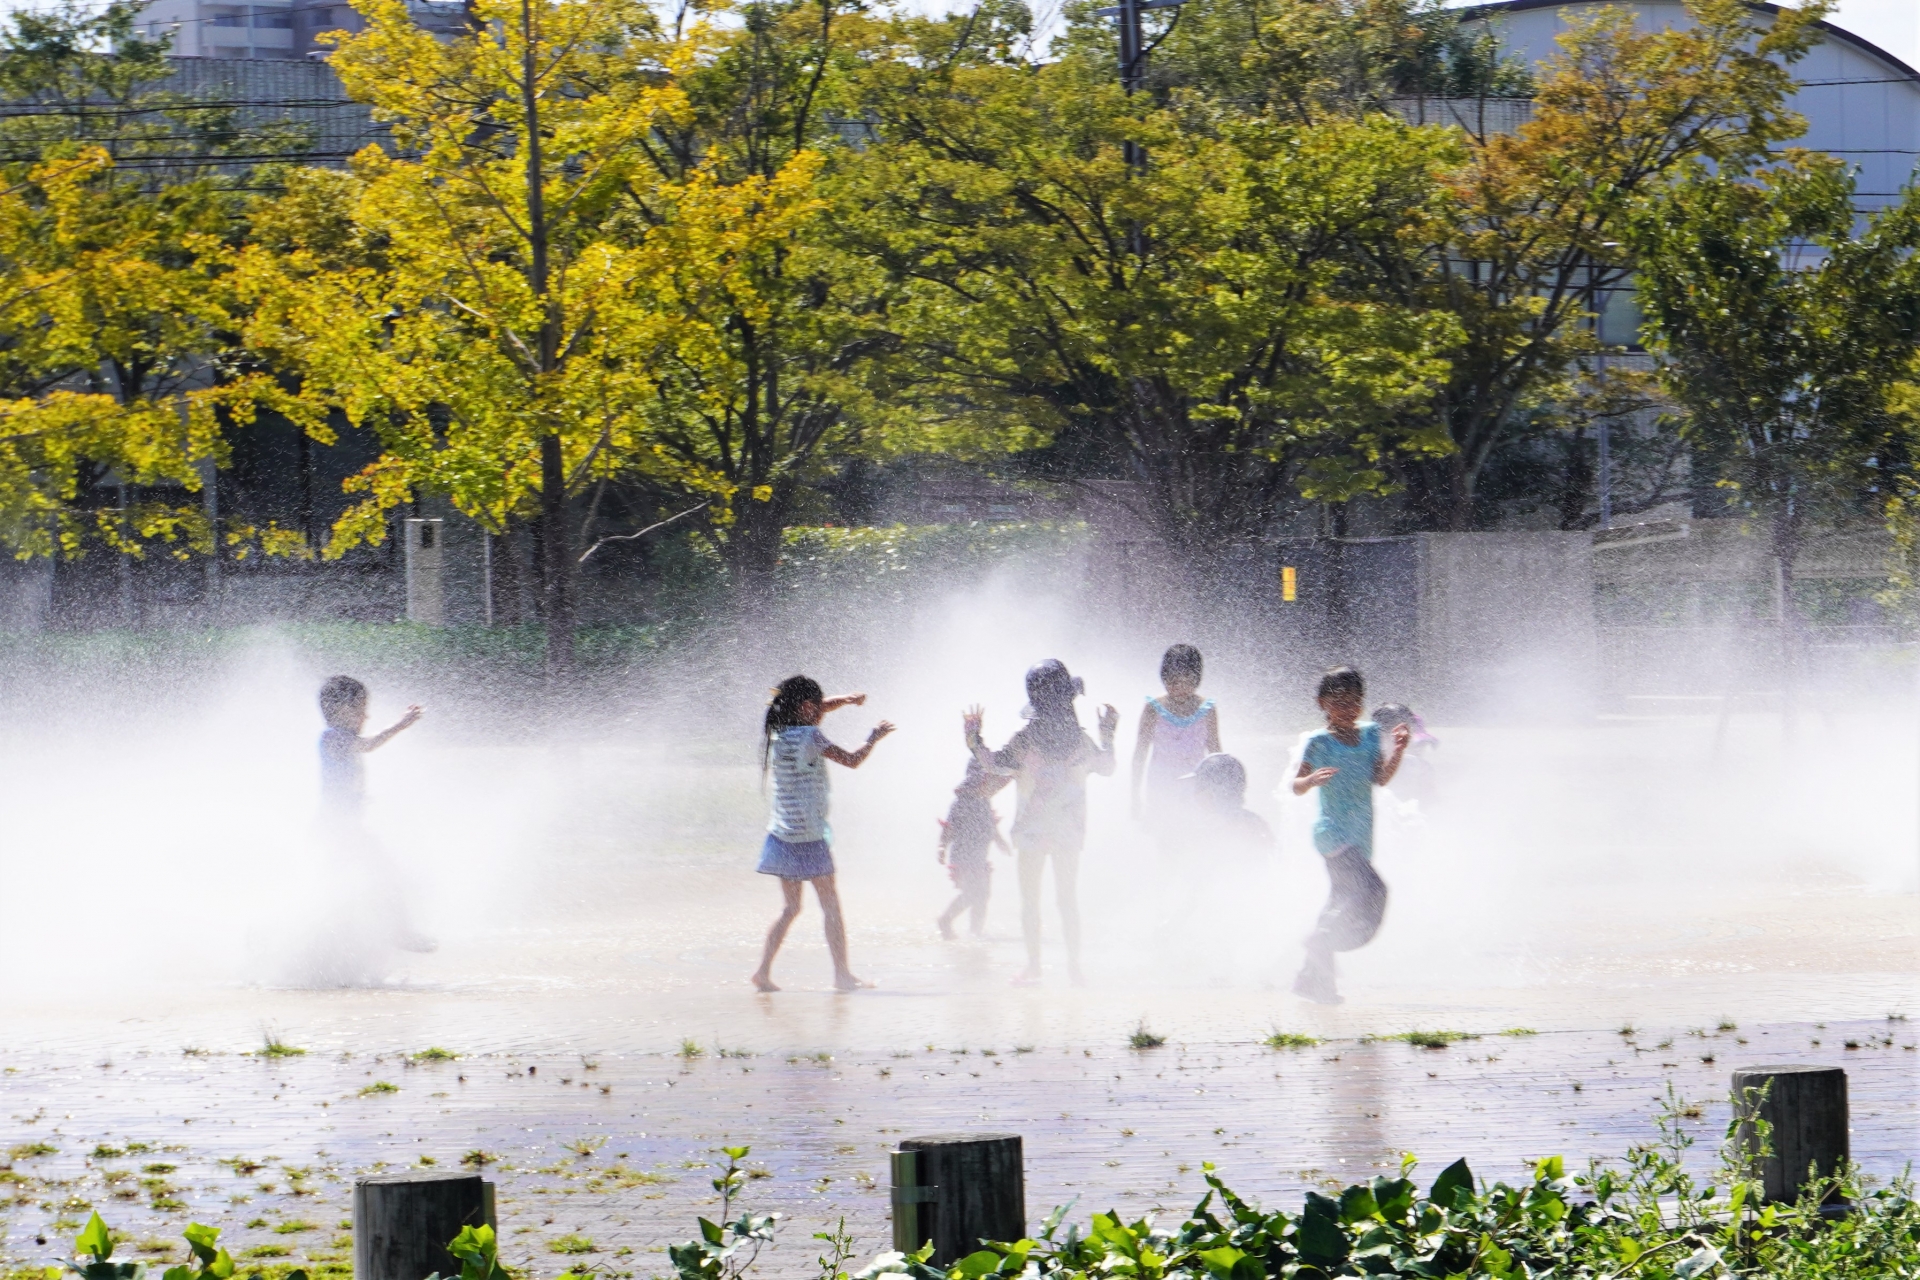 暑い中、公園にある噴水で水遊びを楽しむ子どもたちの写真です